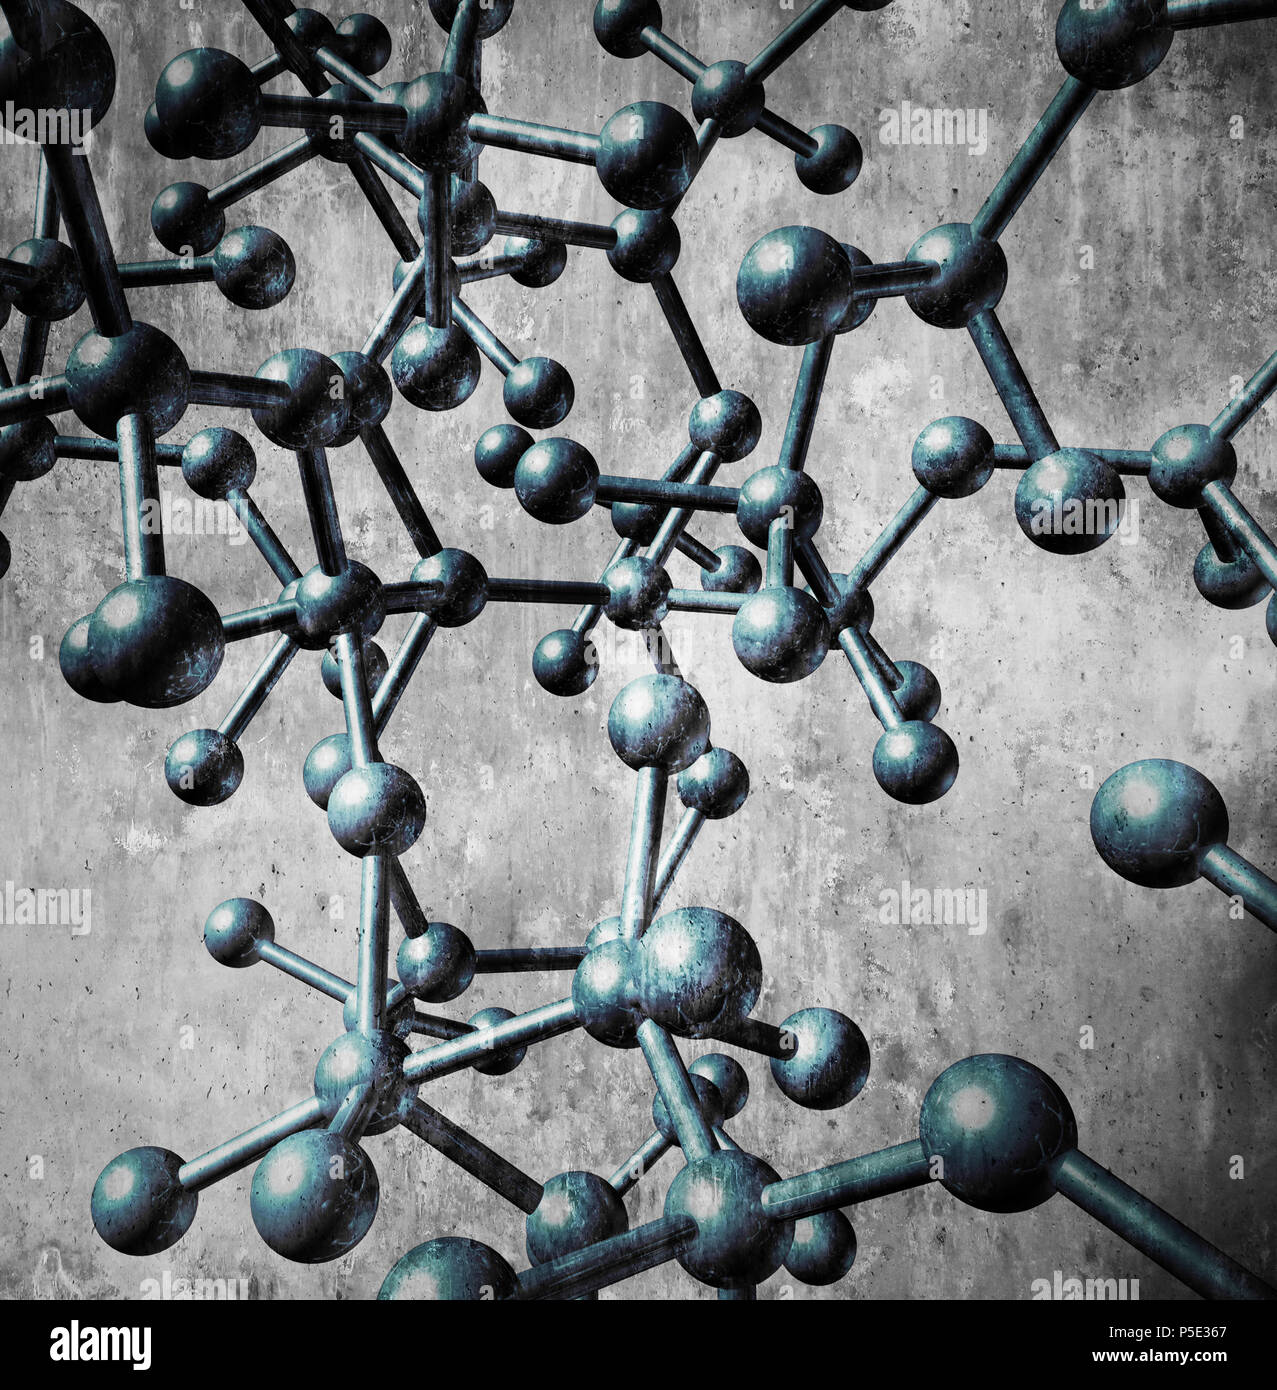 Molekül Symbol Konzept, wie eine Gruppe von dreidimensionalen Atome in einem blauen Hintergrund zusammen durch chemische Bindungen verbunden als molekulare Wissenschaft. Stockfoto